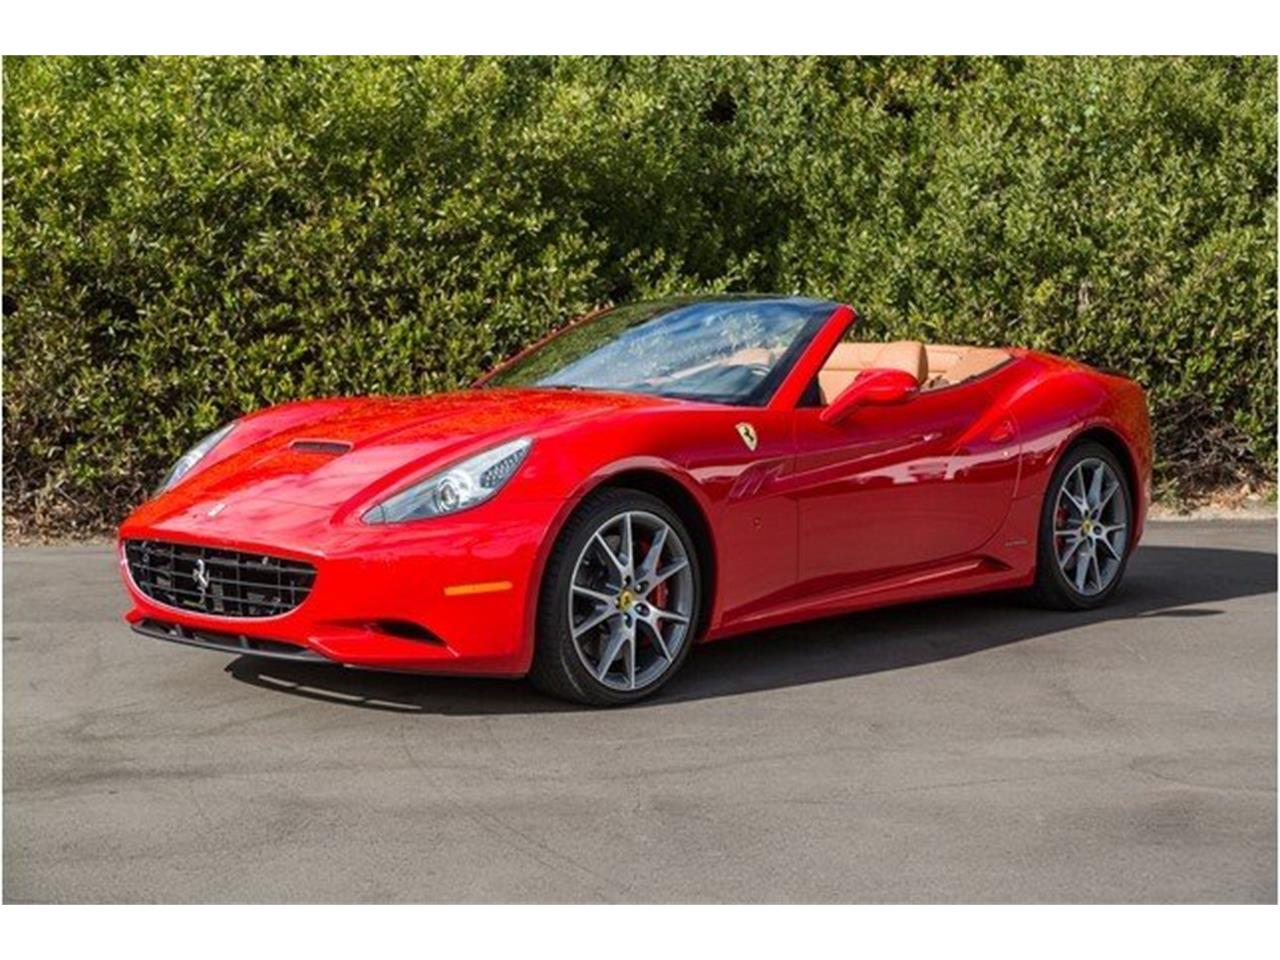 2010 Ferrari California for Sale | ClassicCars.com | CC-1069661